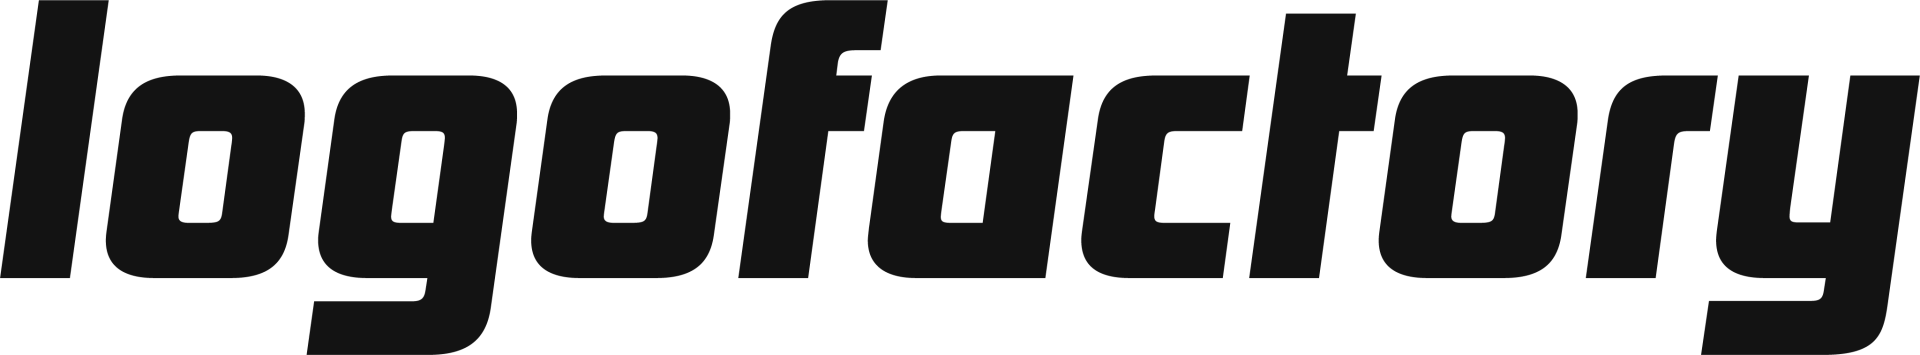 logofactory logotyp